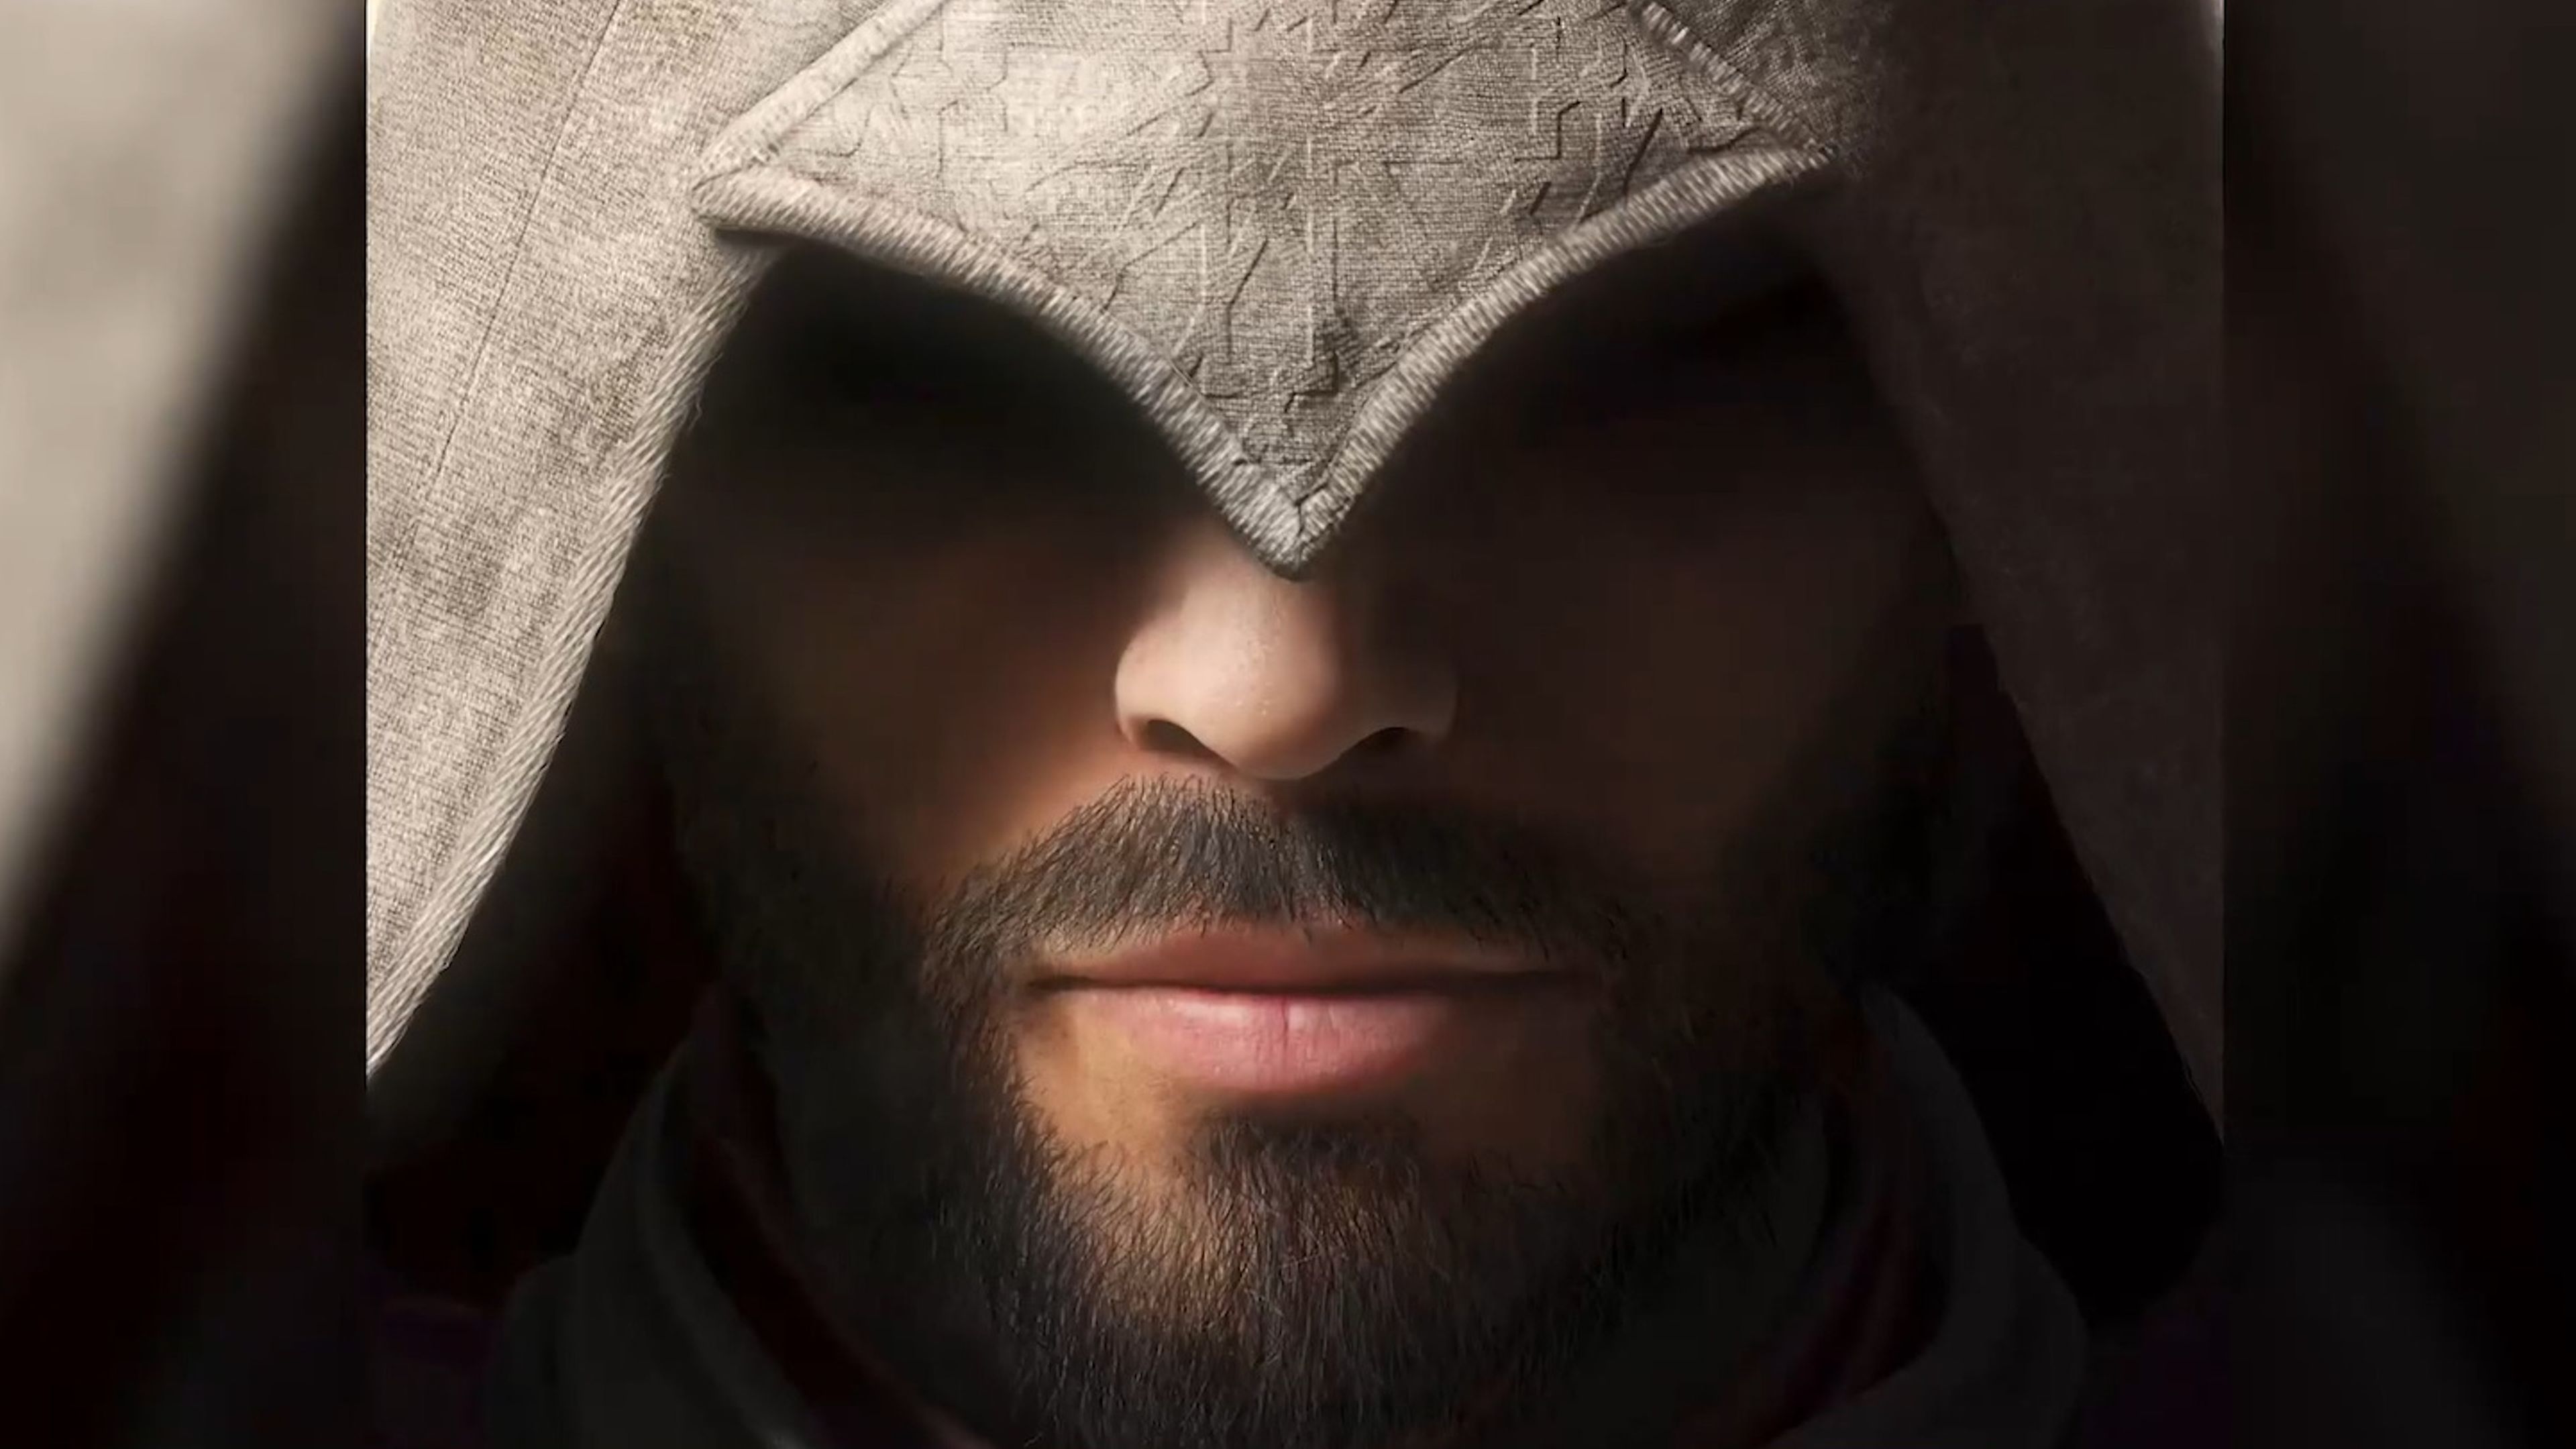 Assassin's Creed Mirage' y su regreso a los orígenes arranca la